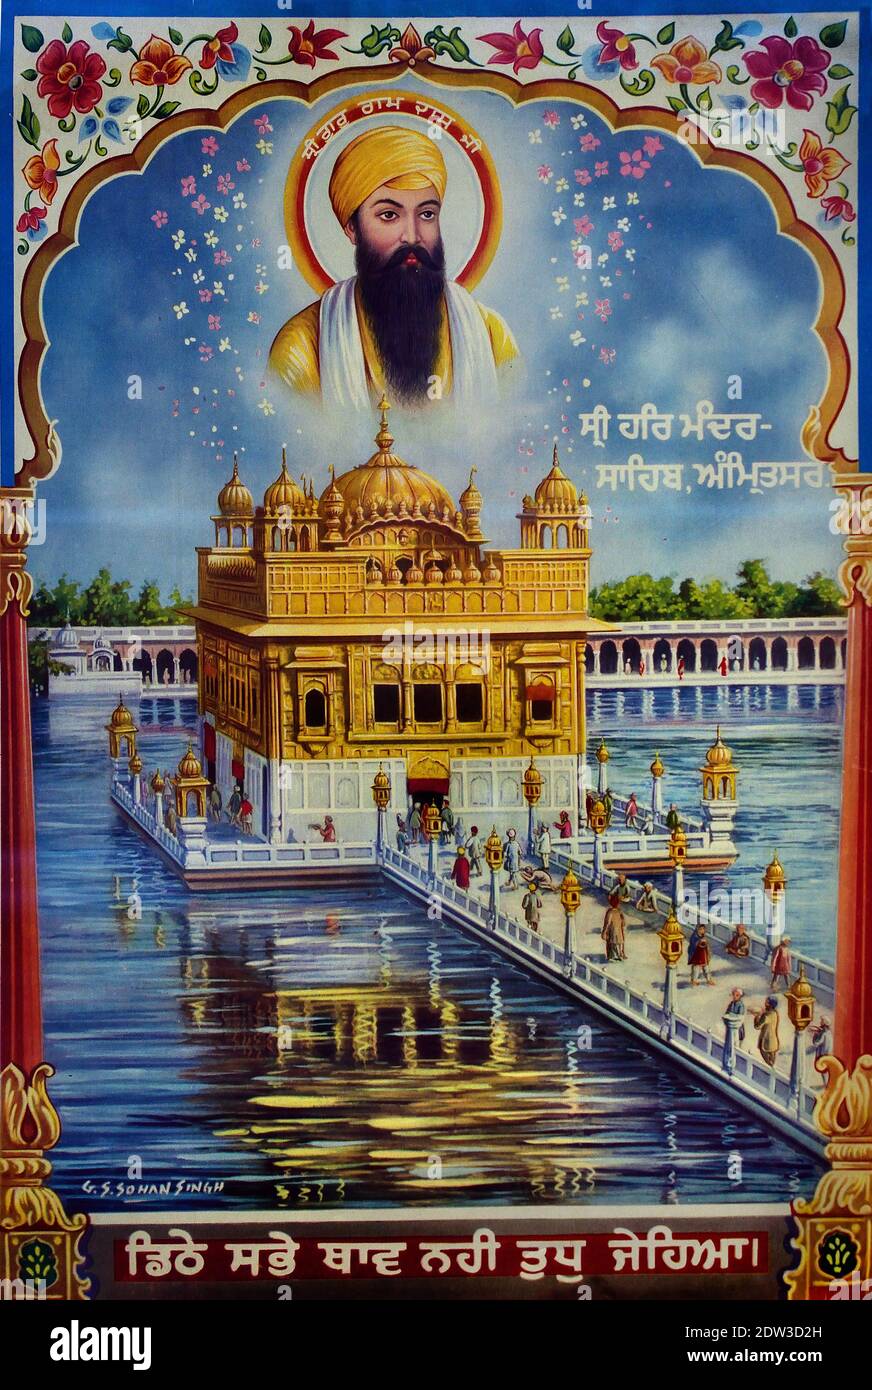 Der Goldene Tempel, auch bekannt als Harmandir Sahib, was bedeutet "Wohnstatt Gottes" oder Darbār Sahib, was bedeutet "erhabenen Hof" ), die Gurdwara ist um einen von Menschen geschahen Pool (sarovar), die durch den vierten Sikh Guru, Guru RAM das im Jahr 1577 abgeschlossen wurde gebaut. Guru Arjan, der fünfte Guru des Sikhismus, Amritsar, Punjab, Indien. Herausragender spiritueller Ort des Sikhismus. Stockfoto